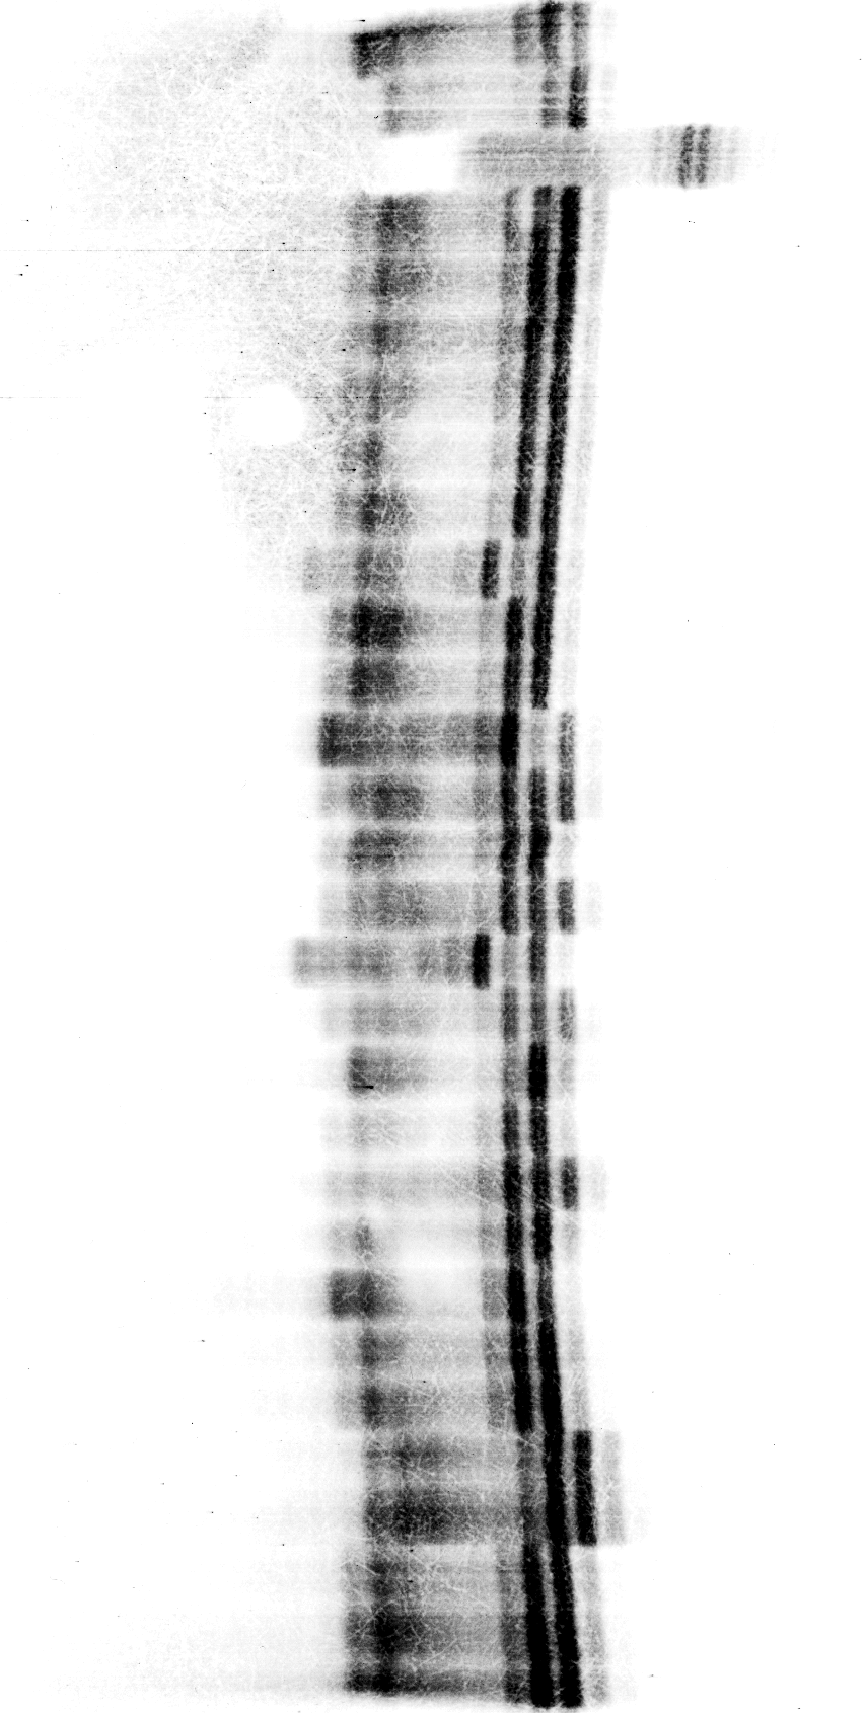 4. E R G E B N I S S E 77 Chromosom IV, Motiv TA/TG Das zweite der auf Chromosom IV untersuchten Motive ergab ein verhältnismäßig kompaktes Muster aus etwa sechs Banden im Größenbereich von etwa 180